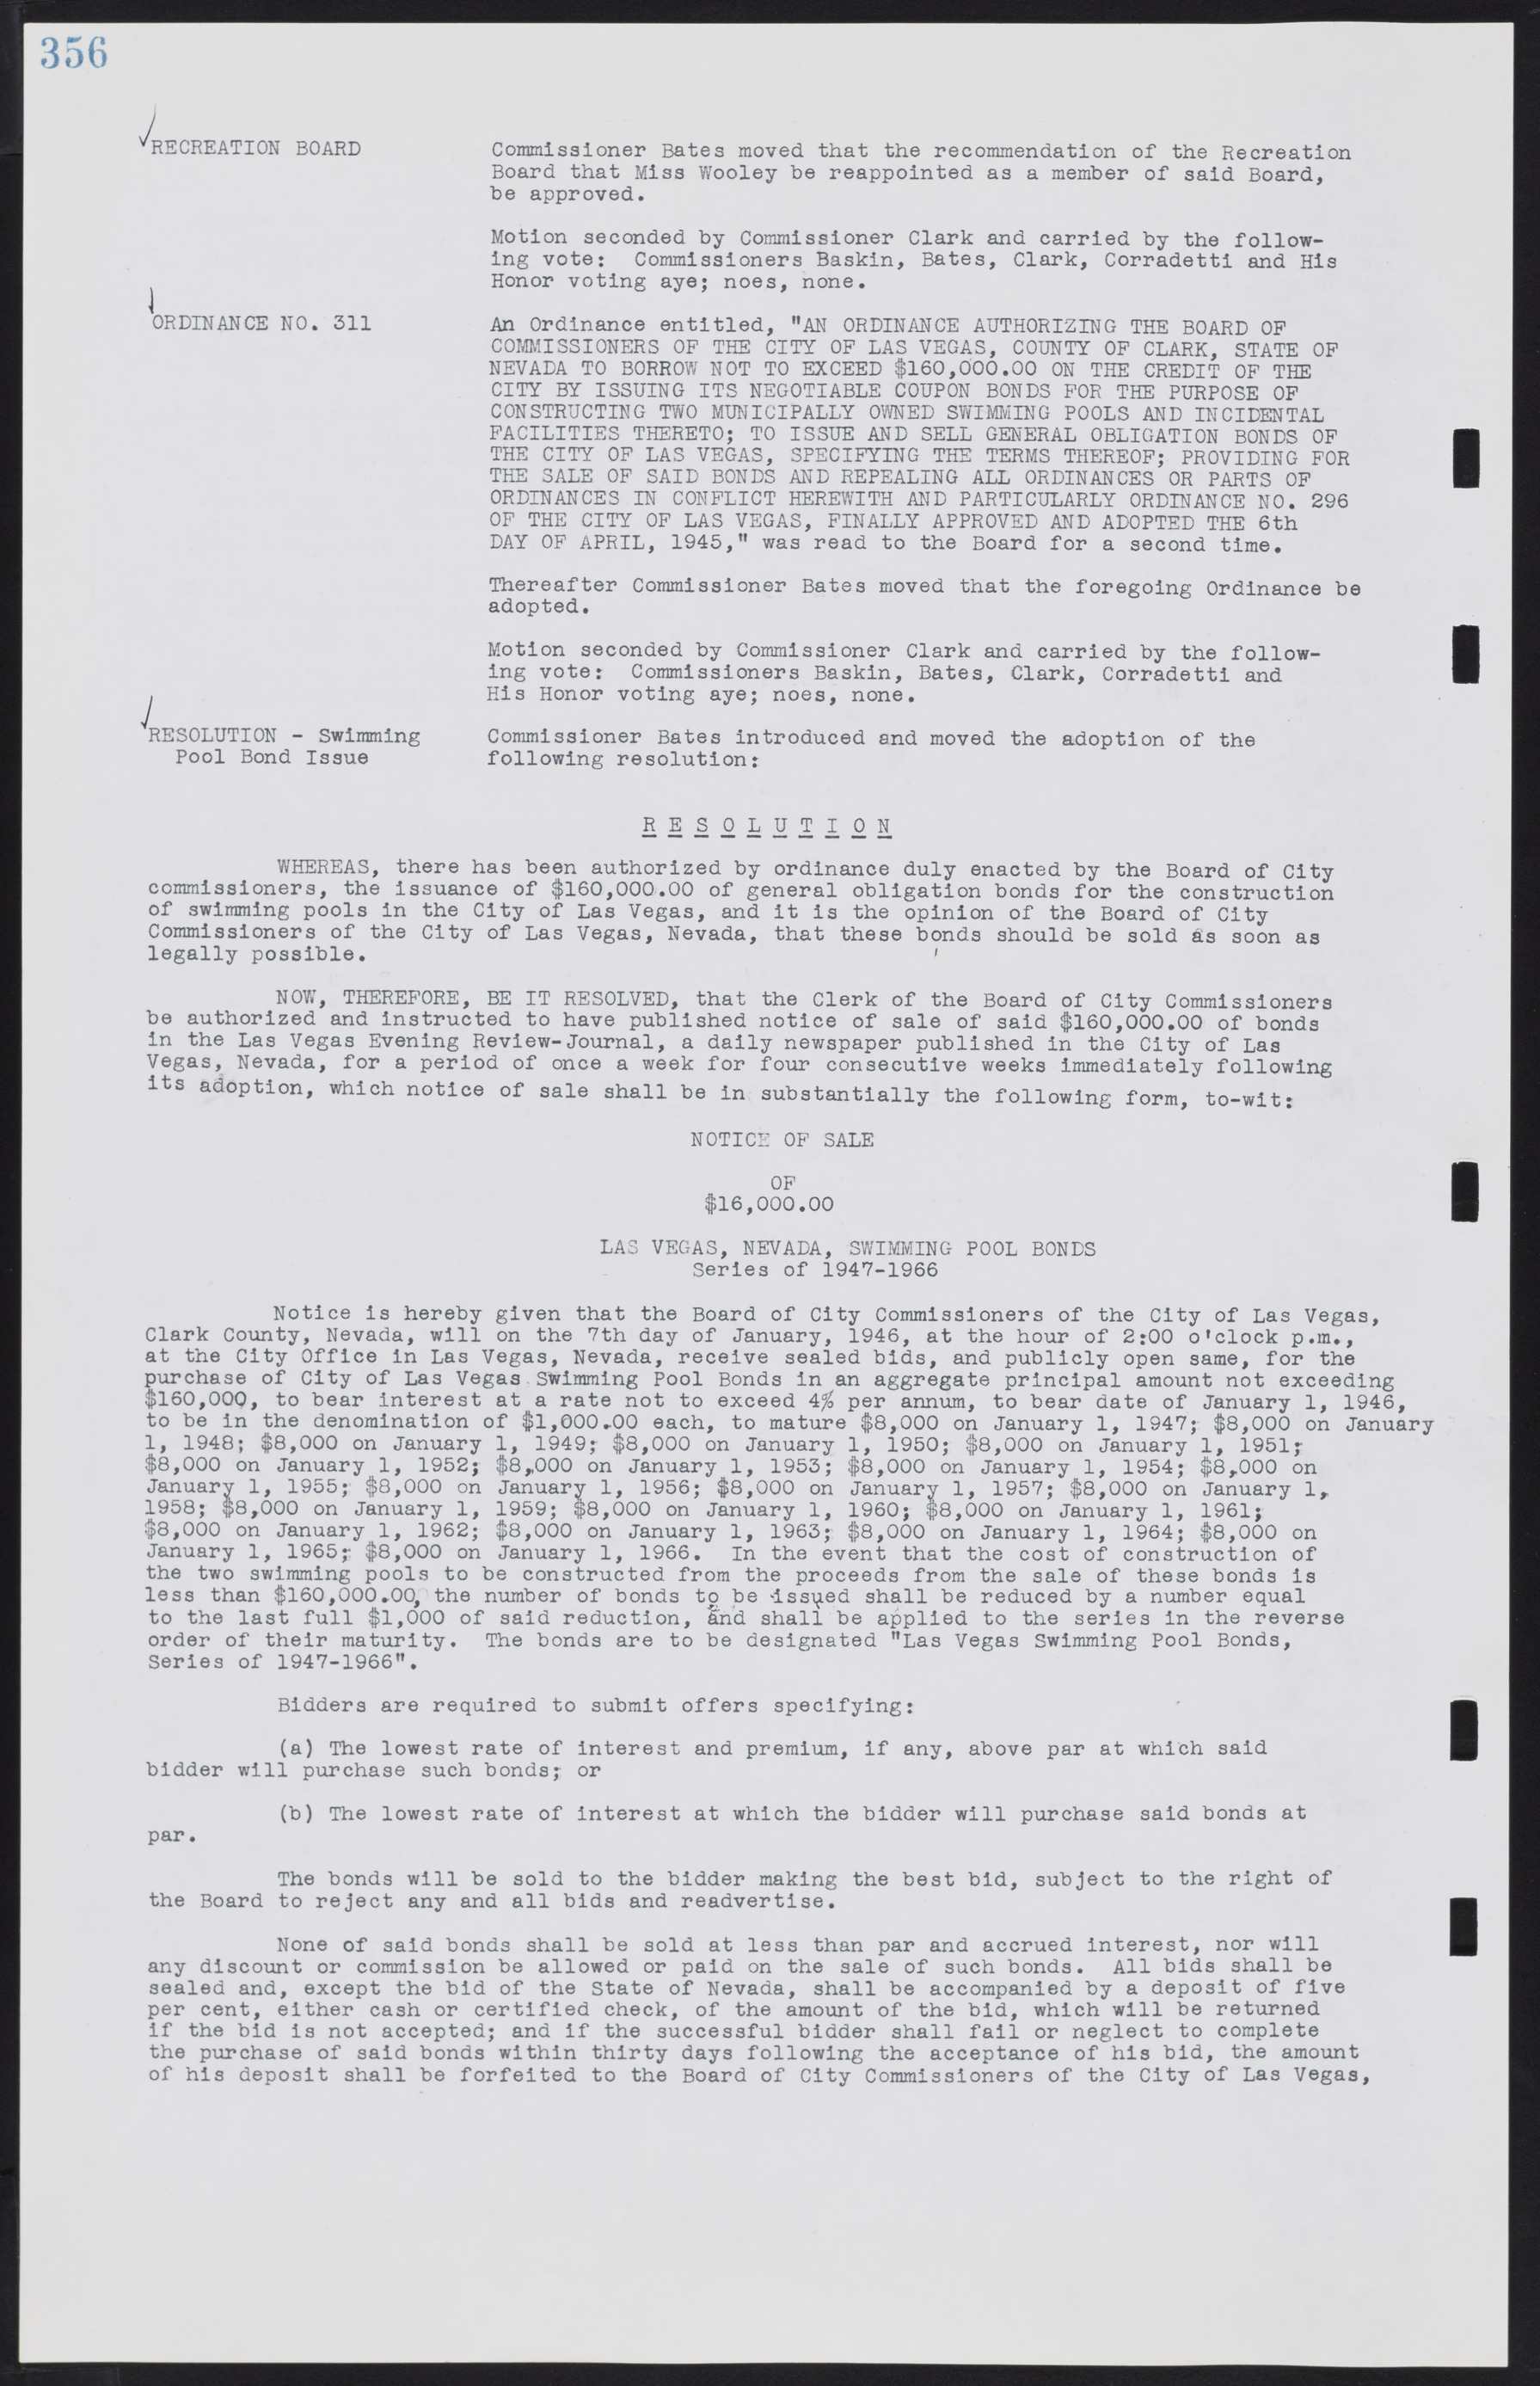 Las Vegas City Commission Minutes, August 11, 1942 to December 30, 1946, lvc000005-381